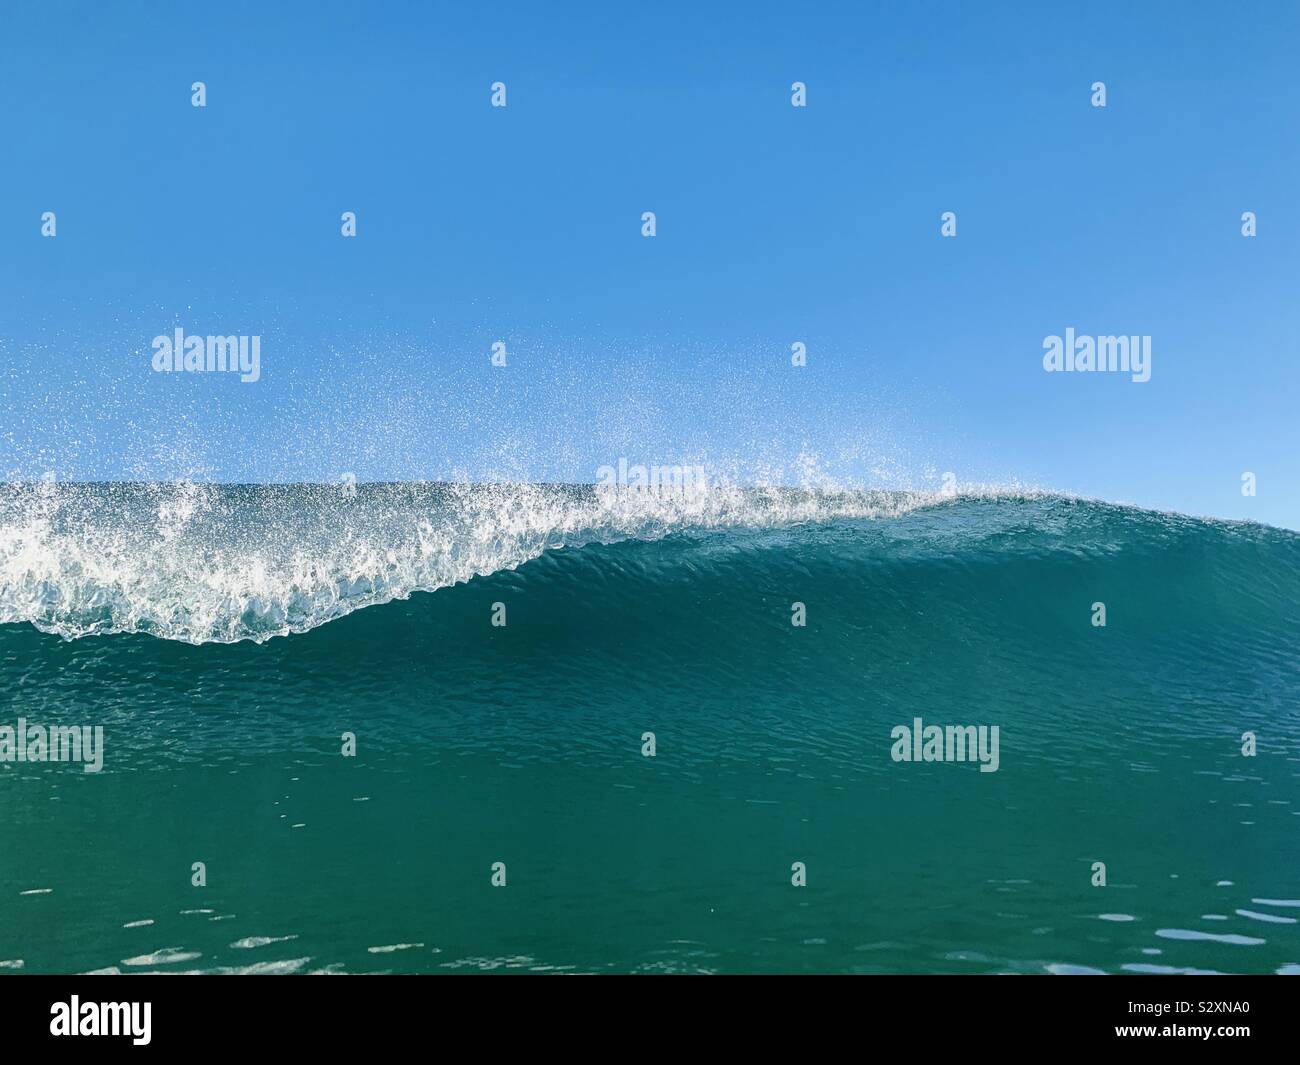 Eine brechende Welle. Manhattan Beach, Kalifornien, USA. Stockfoto